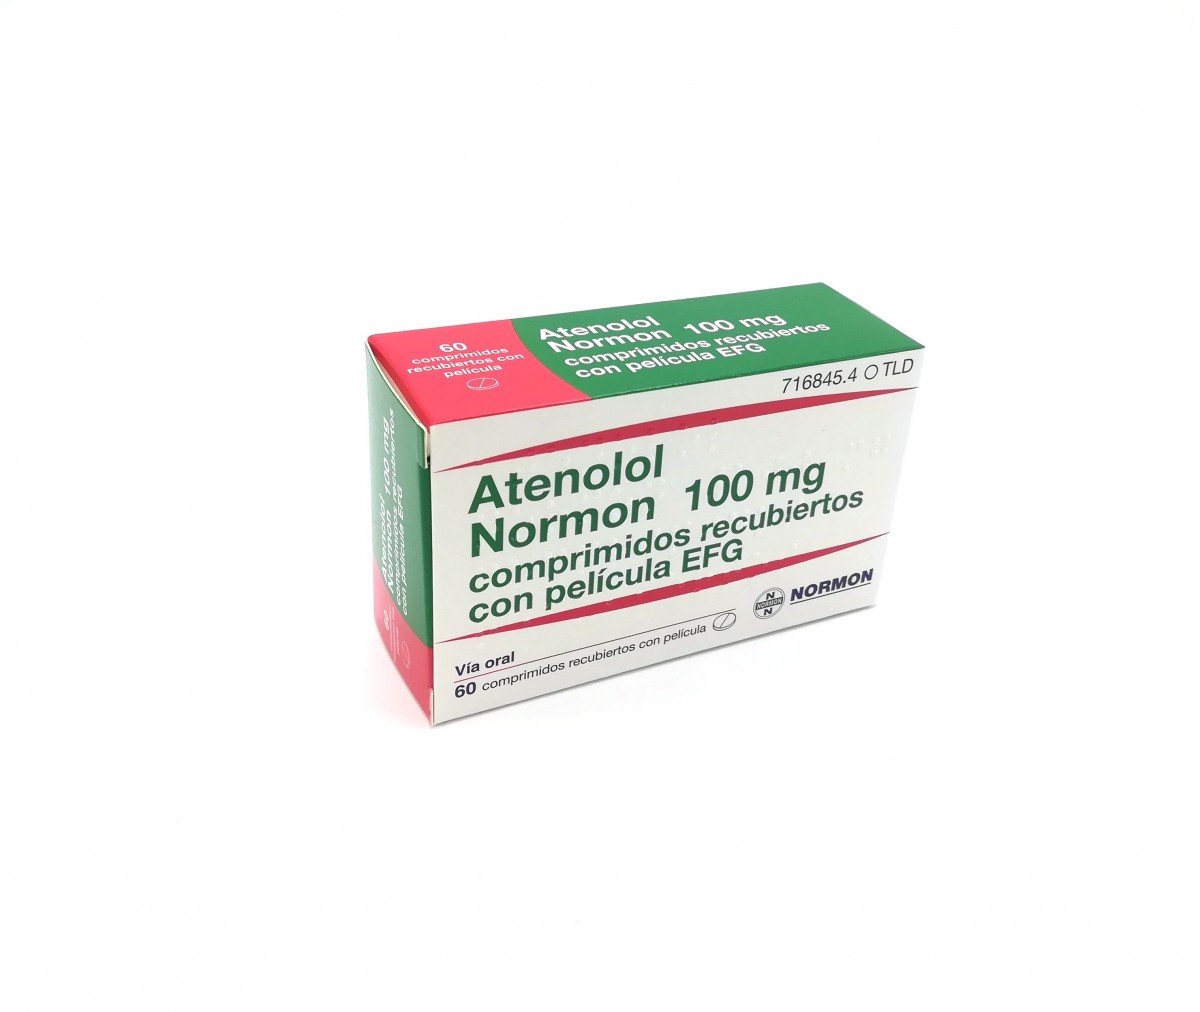 ATENOLOL NORMON 100 mg COMPRIMIDOS RECUBIERTOS EFG, 500 comprimidos fotografía del envase.